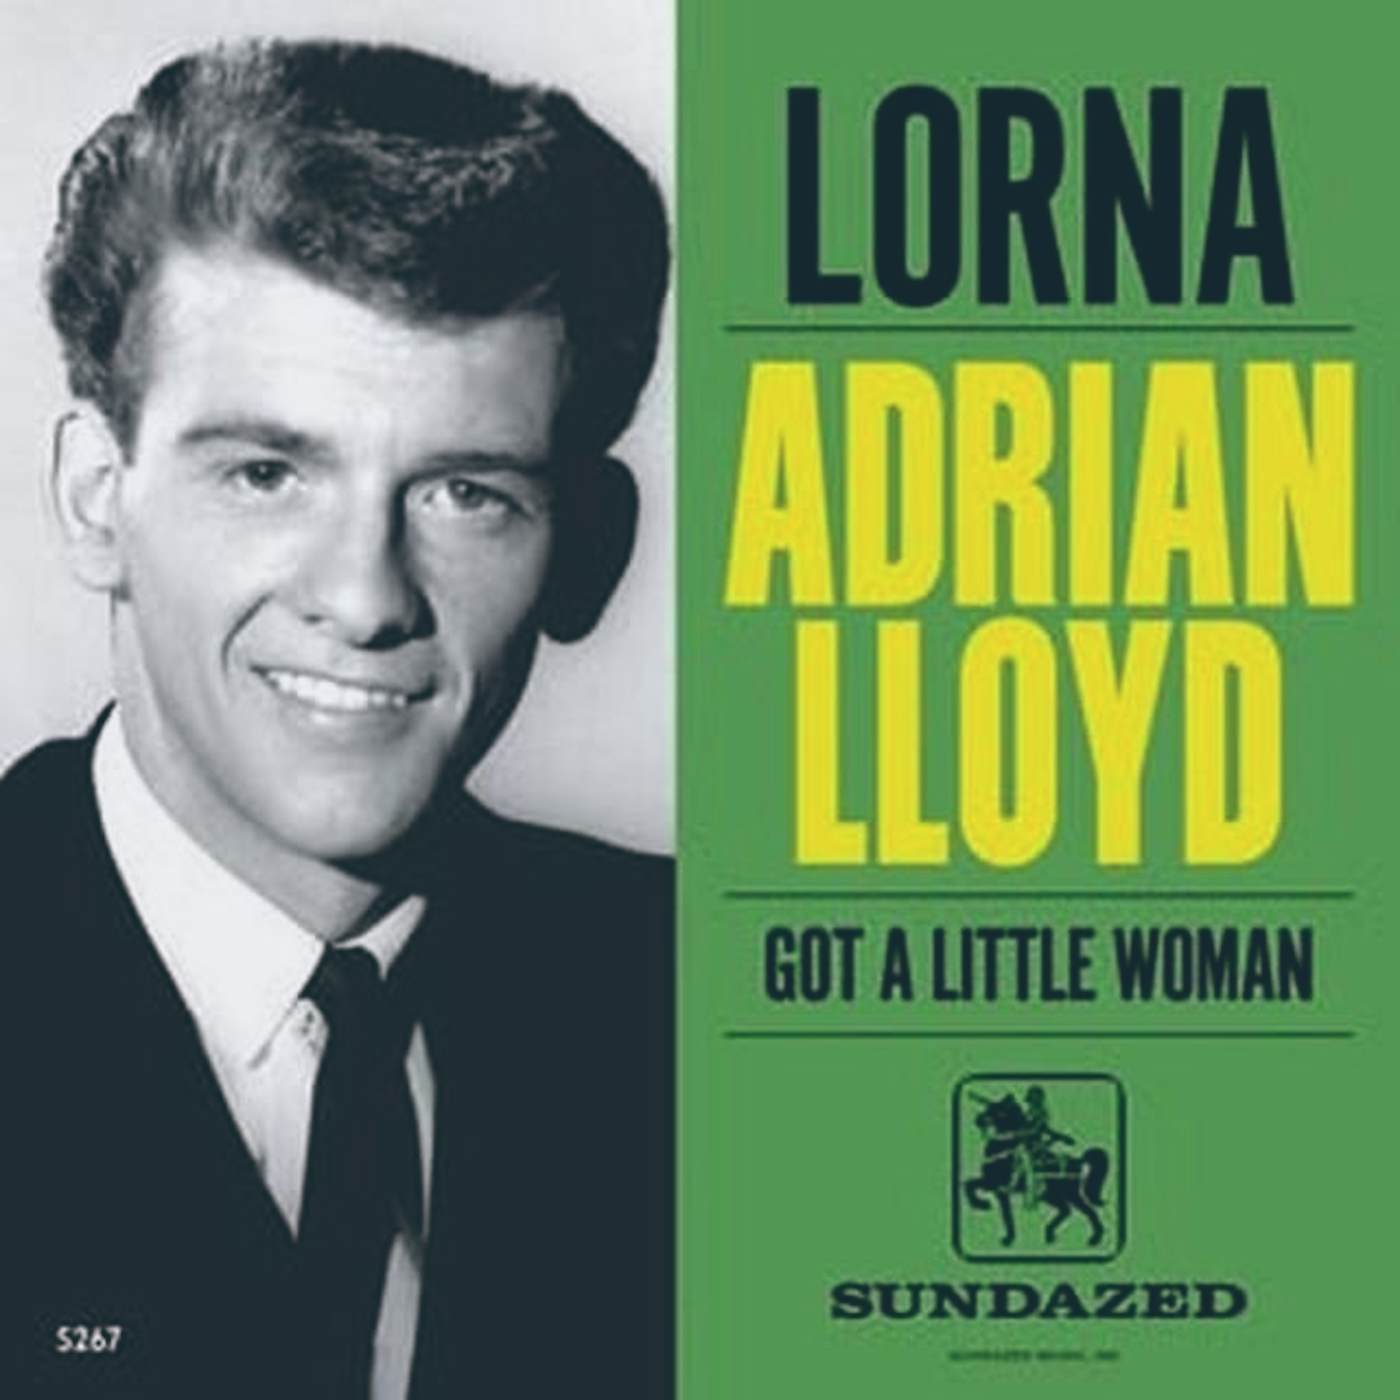 Adrian Lloyd